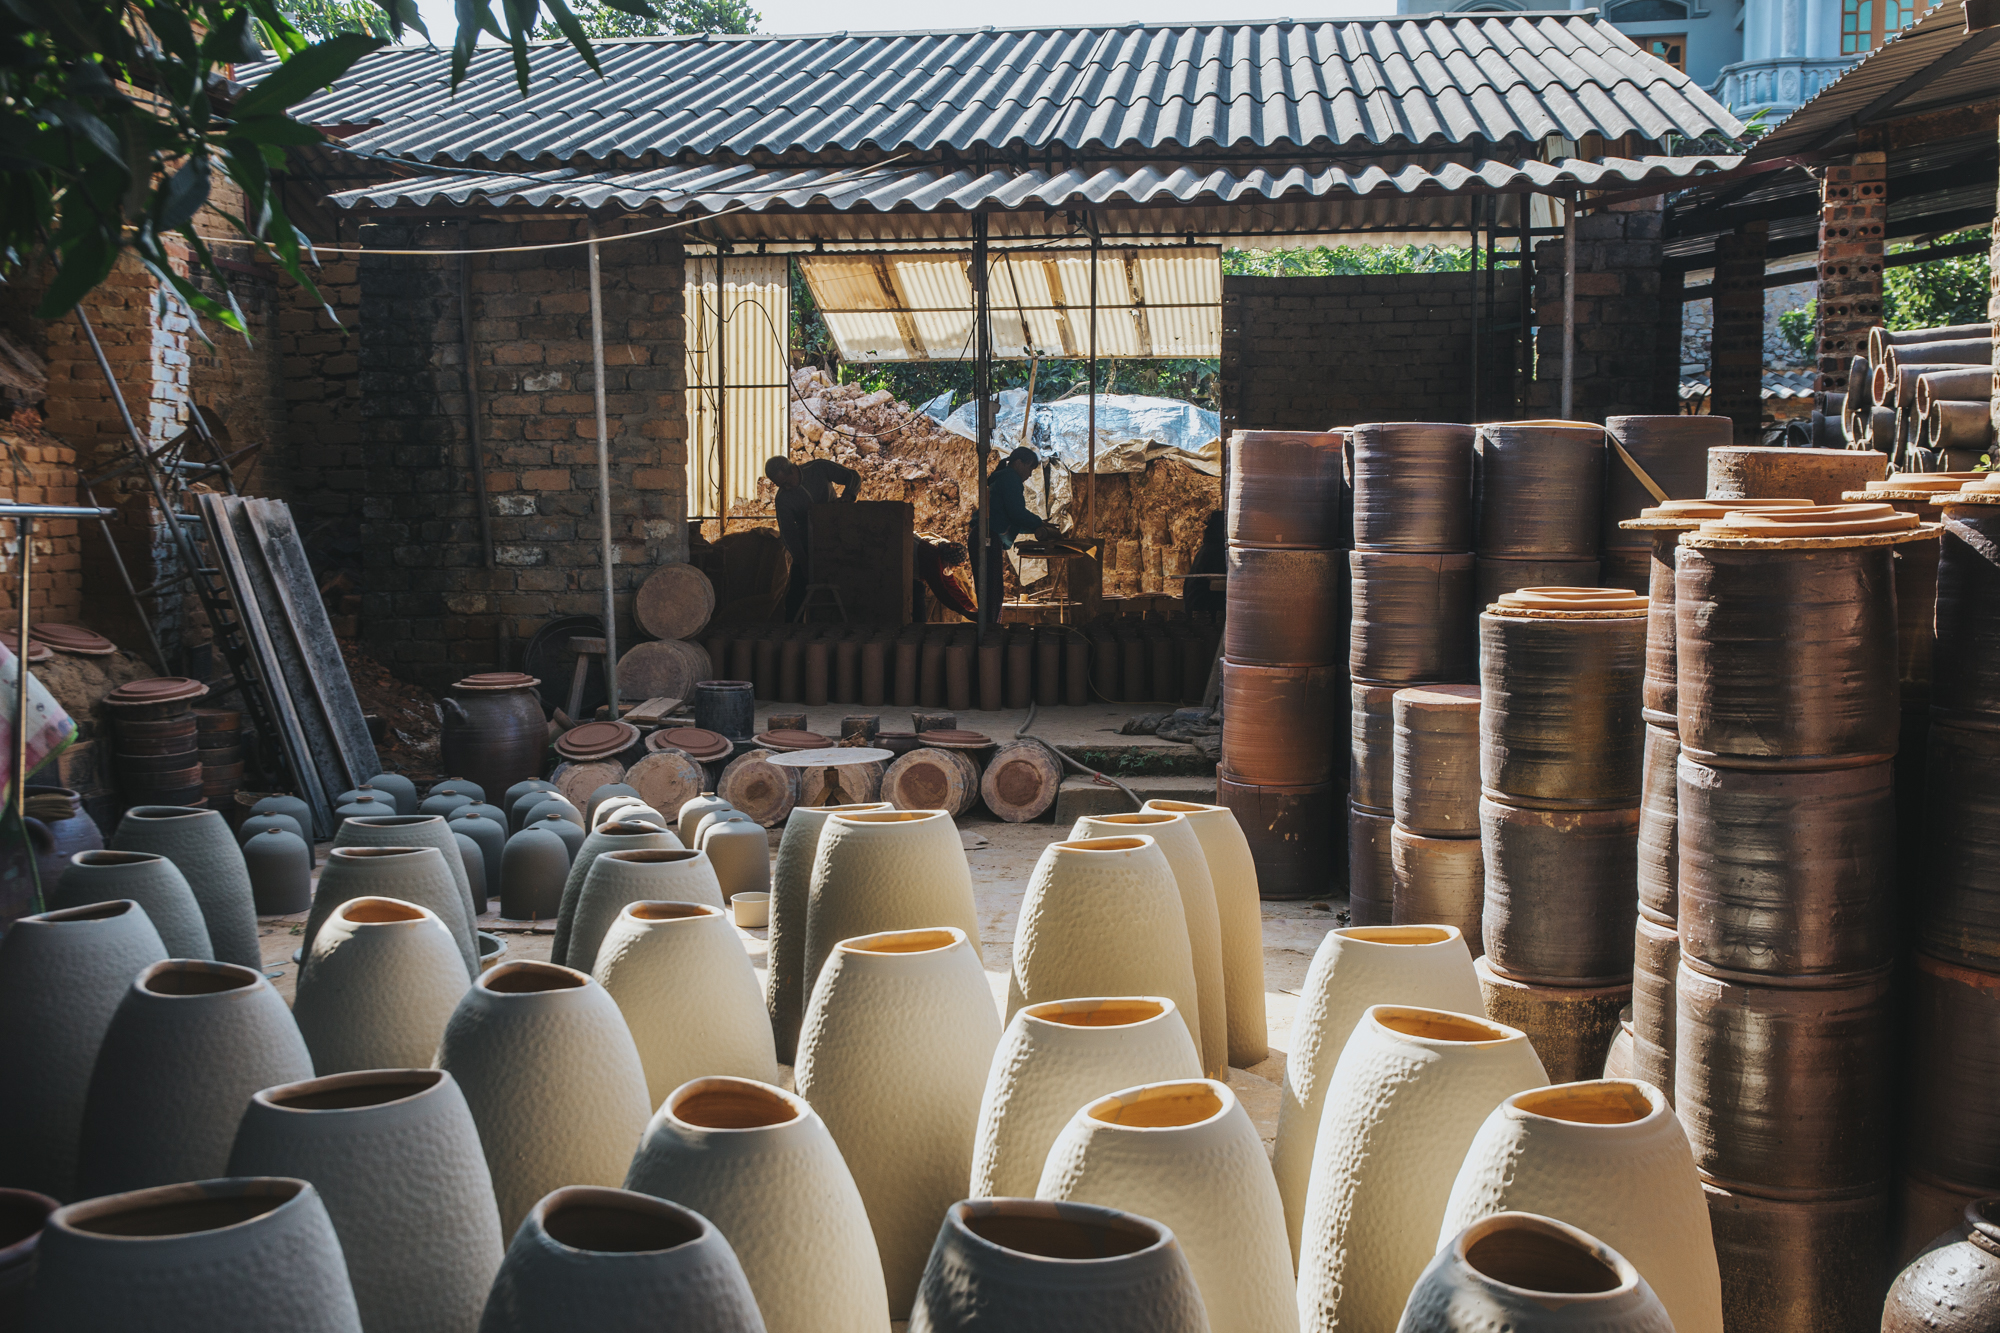 Làng gốm thủ công hơn 700 năm tuổi ở Bắc Ninh tất bật ngày giáp Tết - Ảnh 6.